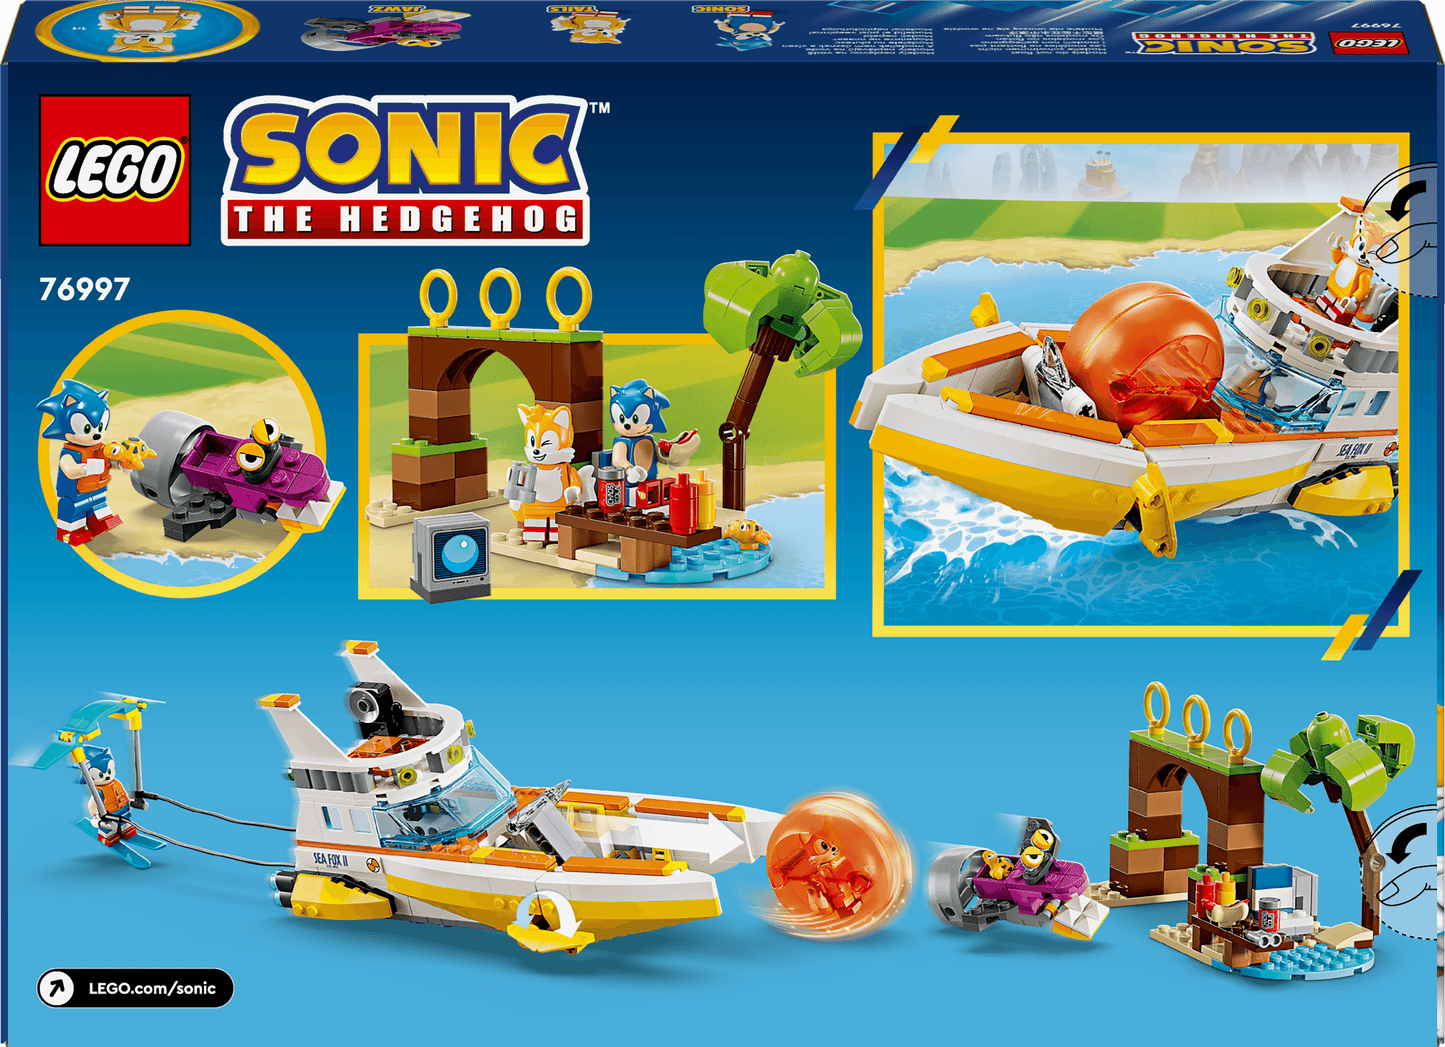 LEGO Tails' avonturenboot 76997 Sonic (Pre-Order: verwacht augustus) LEGO Sonic @ 2TTOYS LEGO €. 46.49